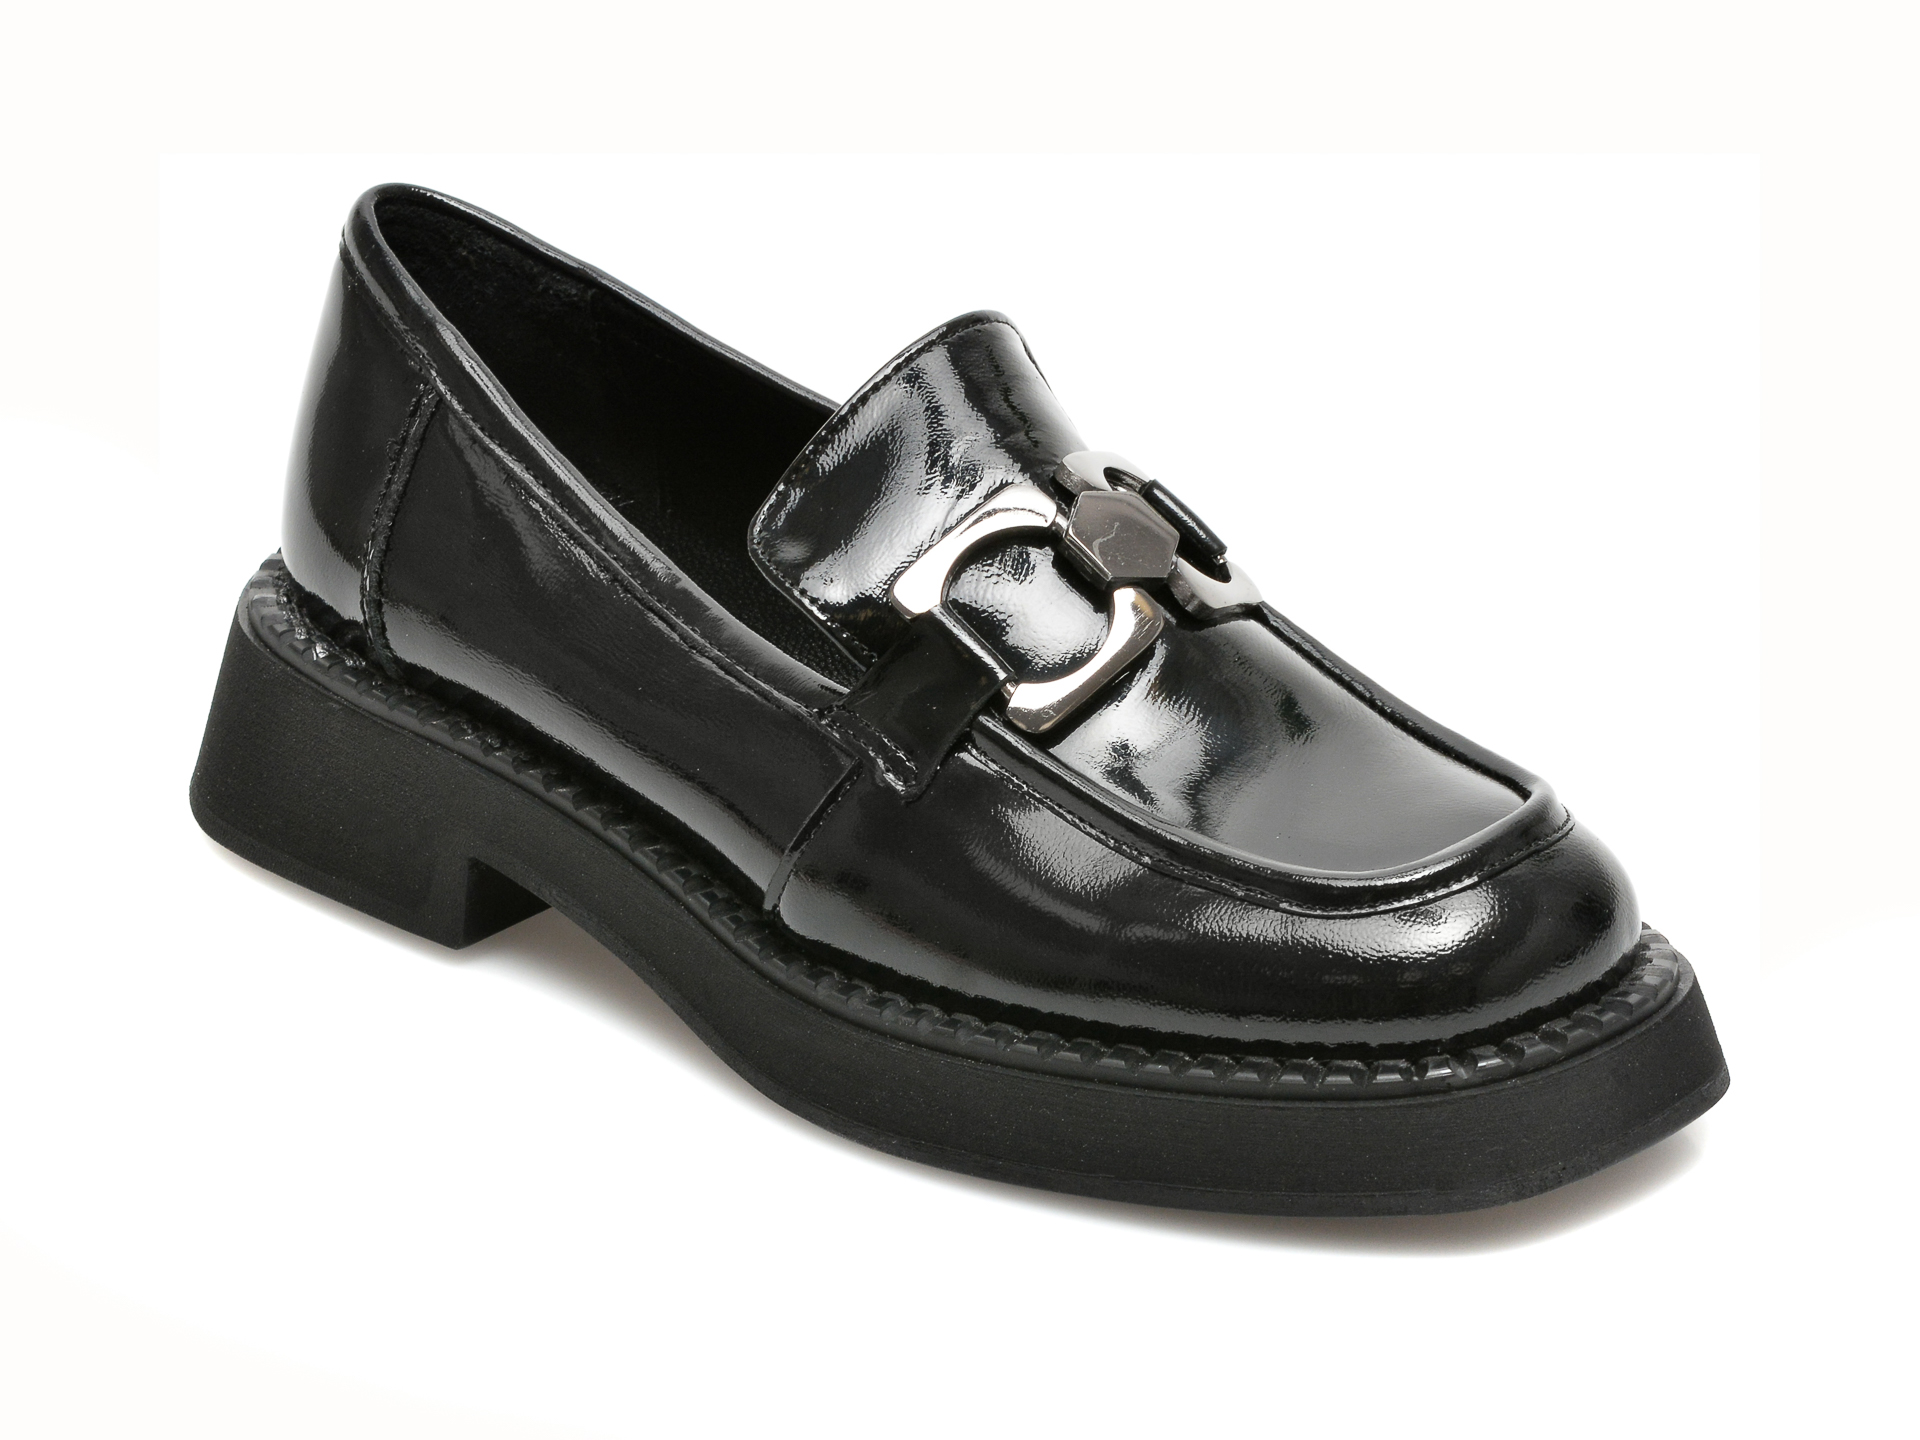 Pantofi FLAVIA PASSINI negri, 21784, din piele naturala lacuita Flavia Passini imagine noua